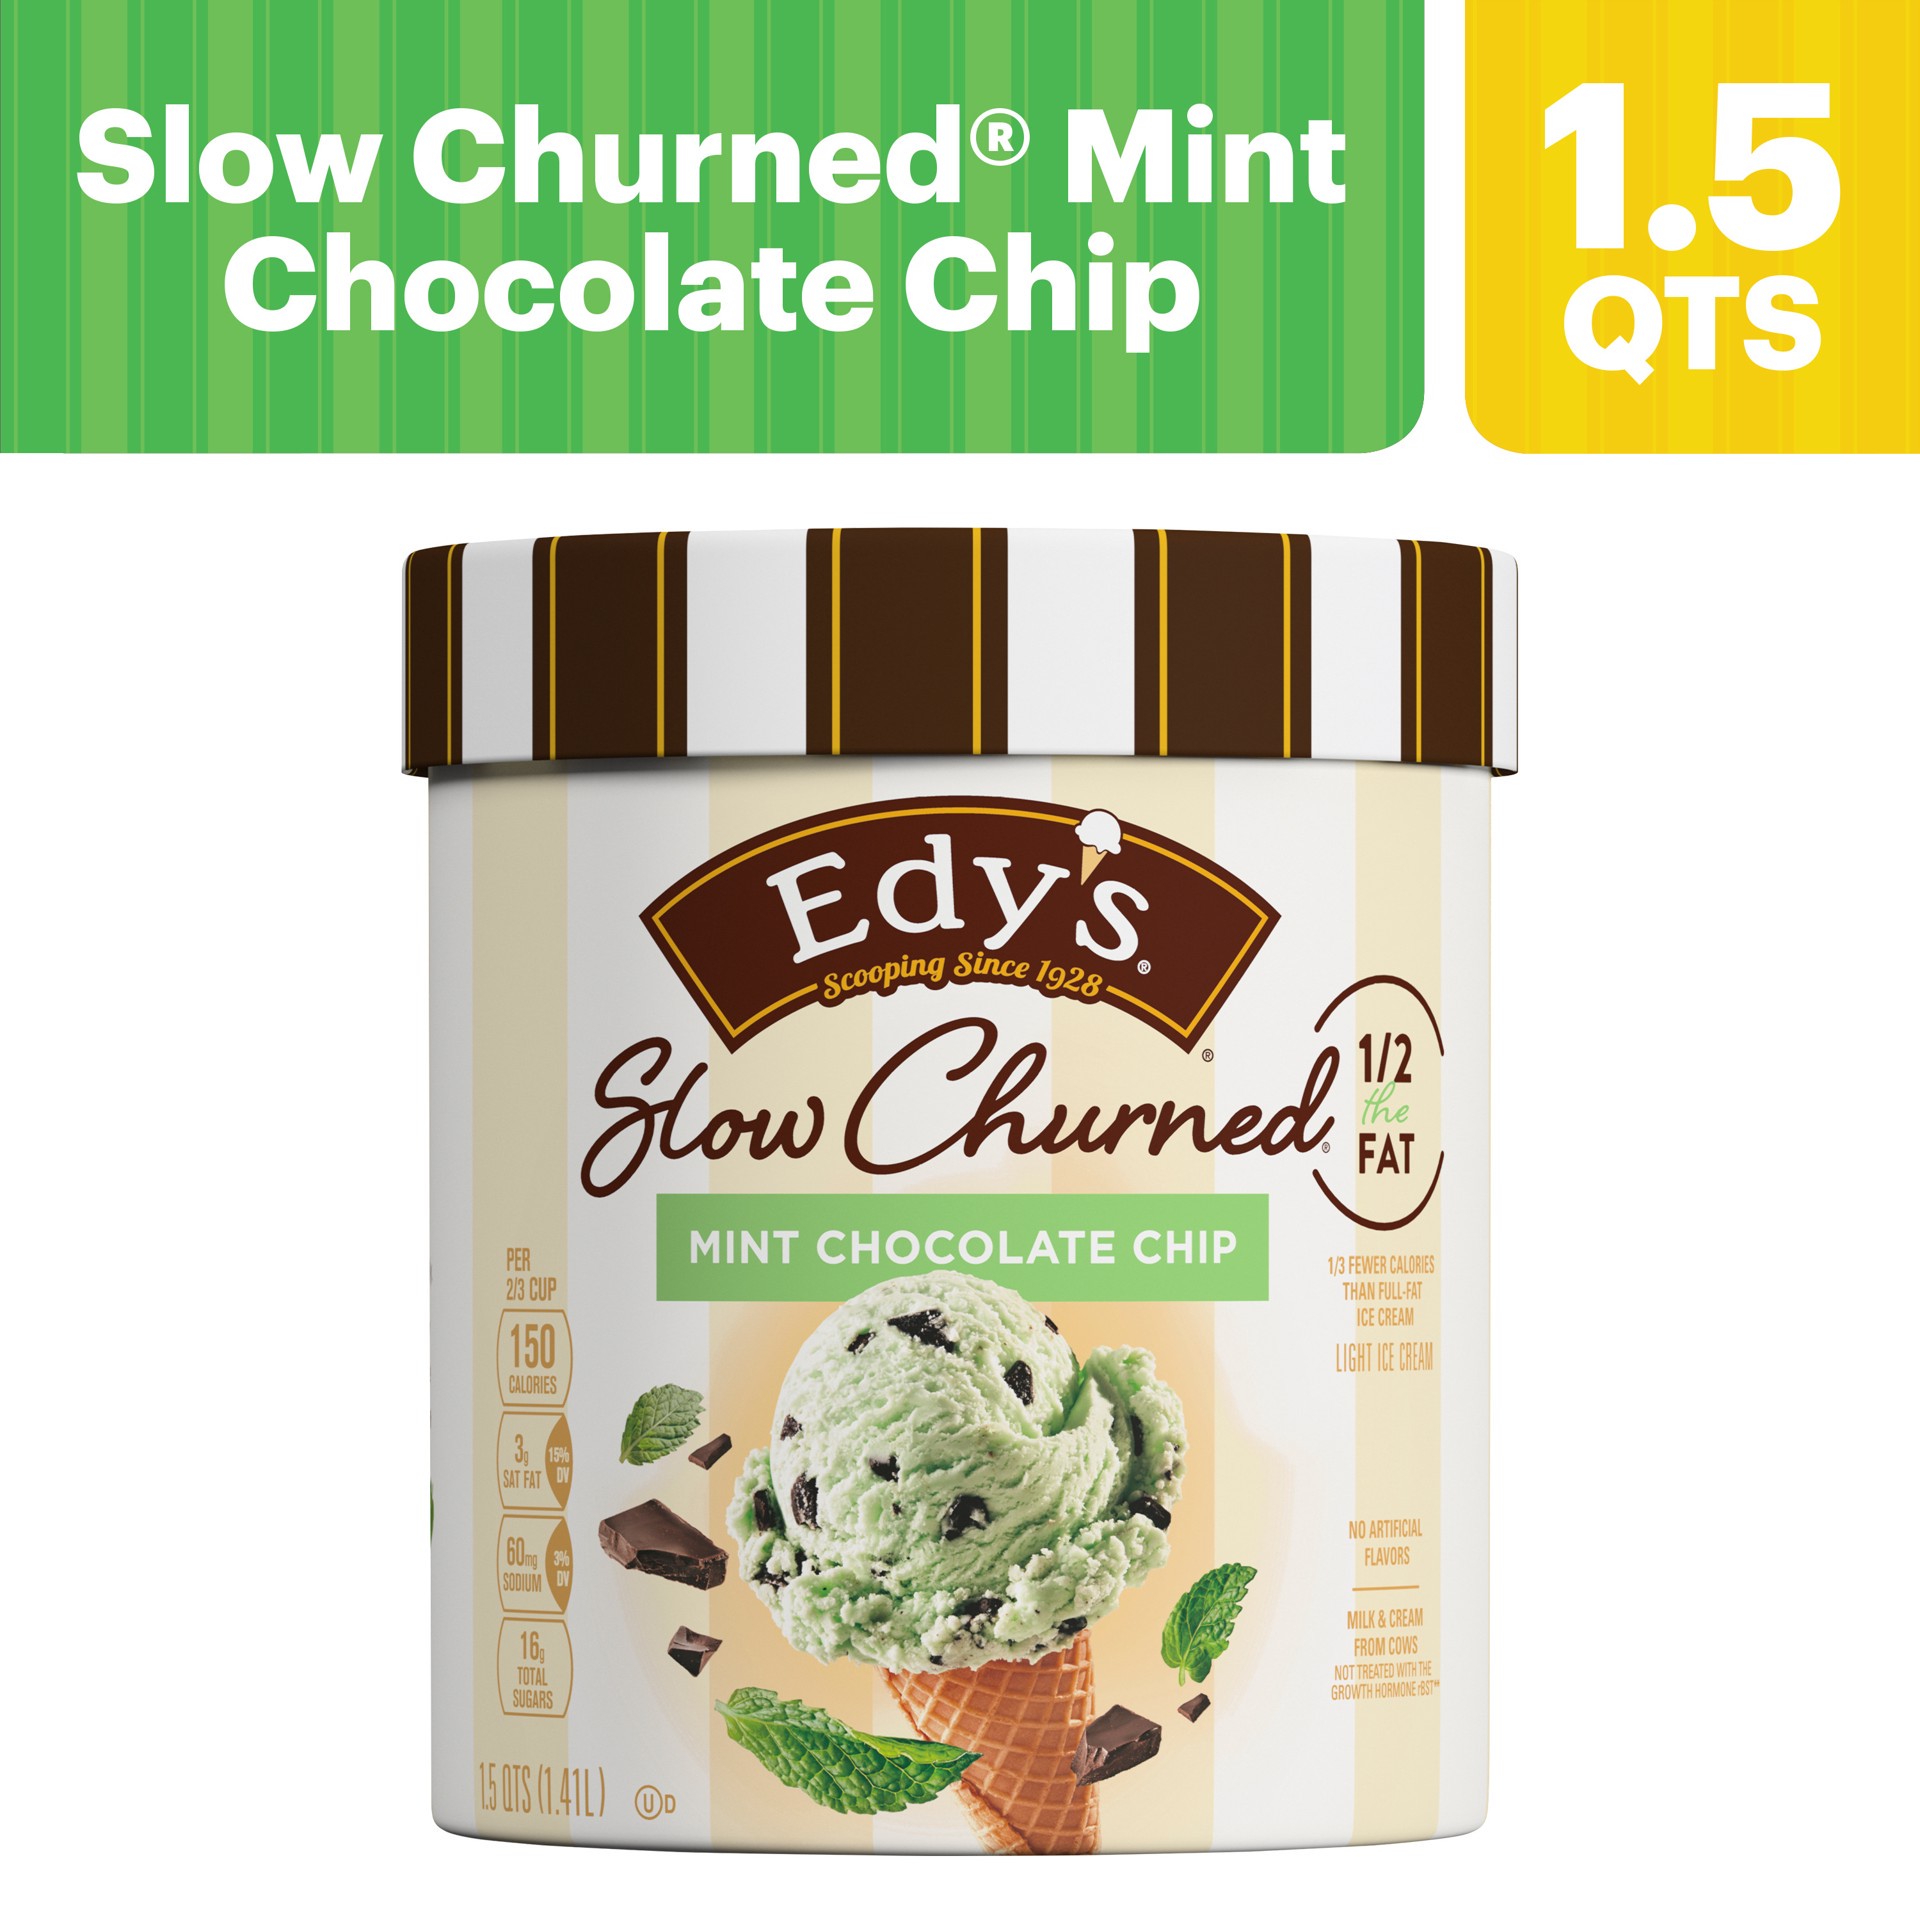 slide 3 of 5, Edy's Slow Churned Light Mint Chocolate Chip Ice Cream 1.5 qt, 1.5 qt